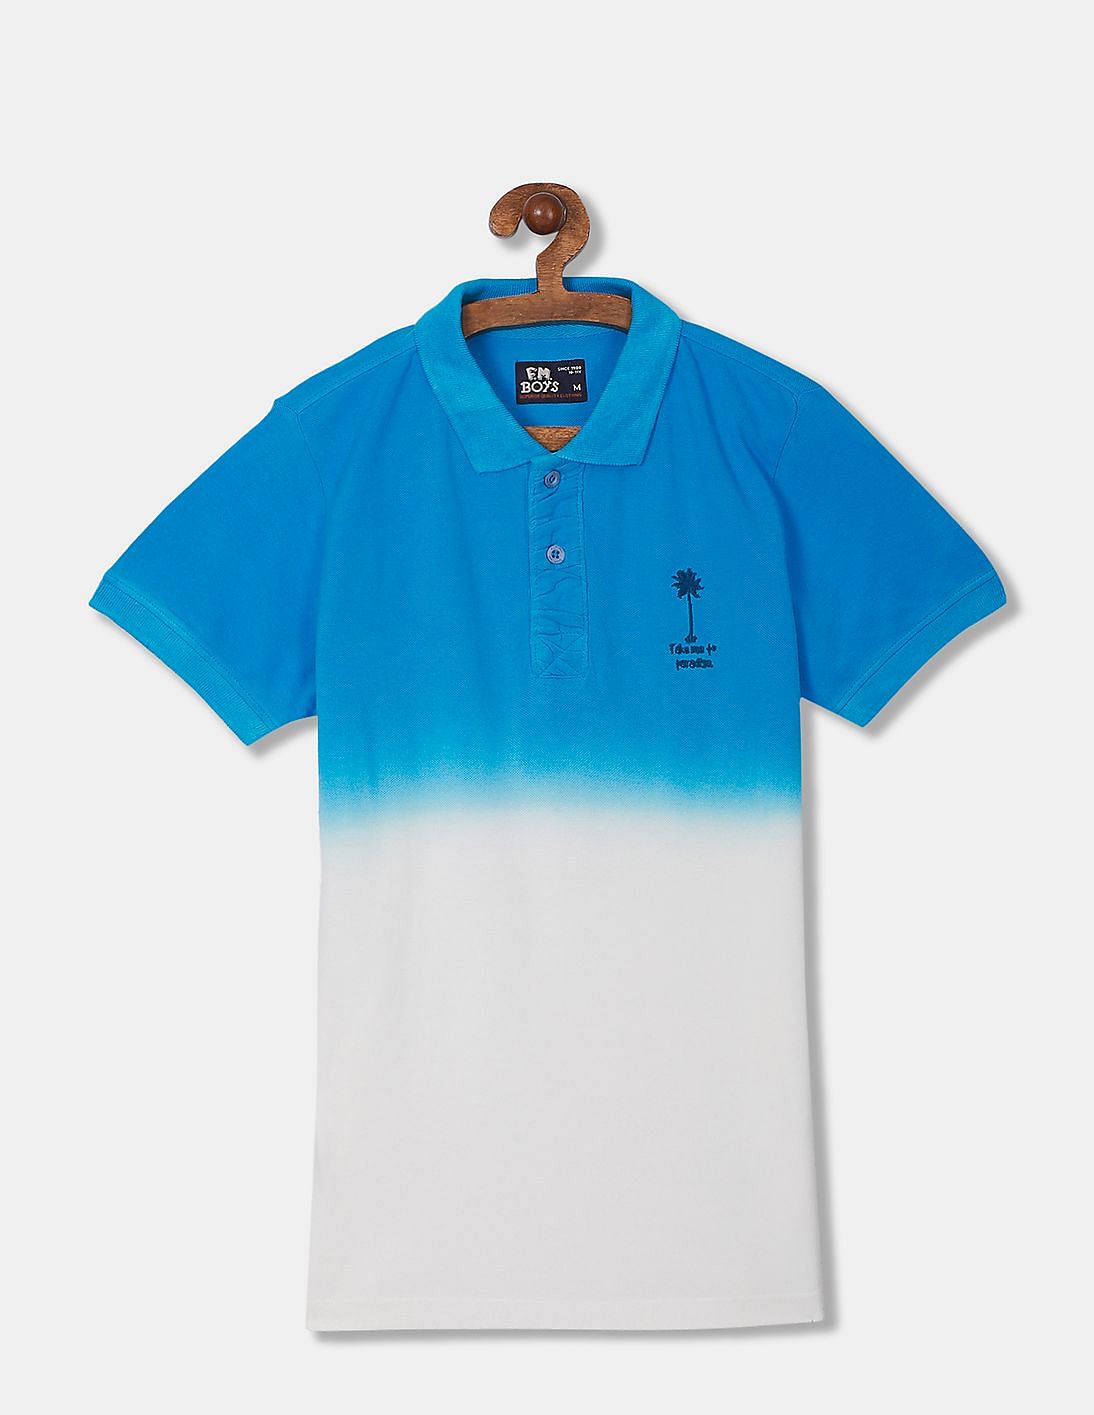 Buy FM Boys Boys Blue and White Short Sleeve Dip Dye Polo Shirt - NNNOW.com